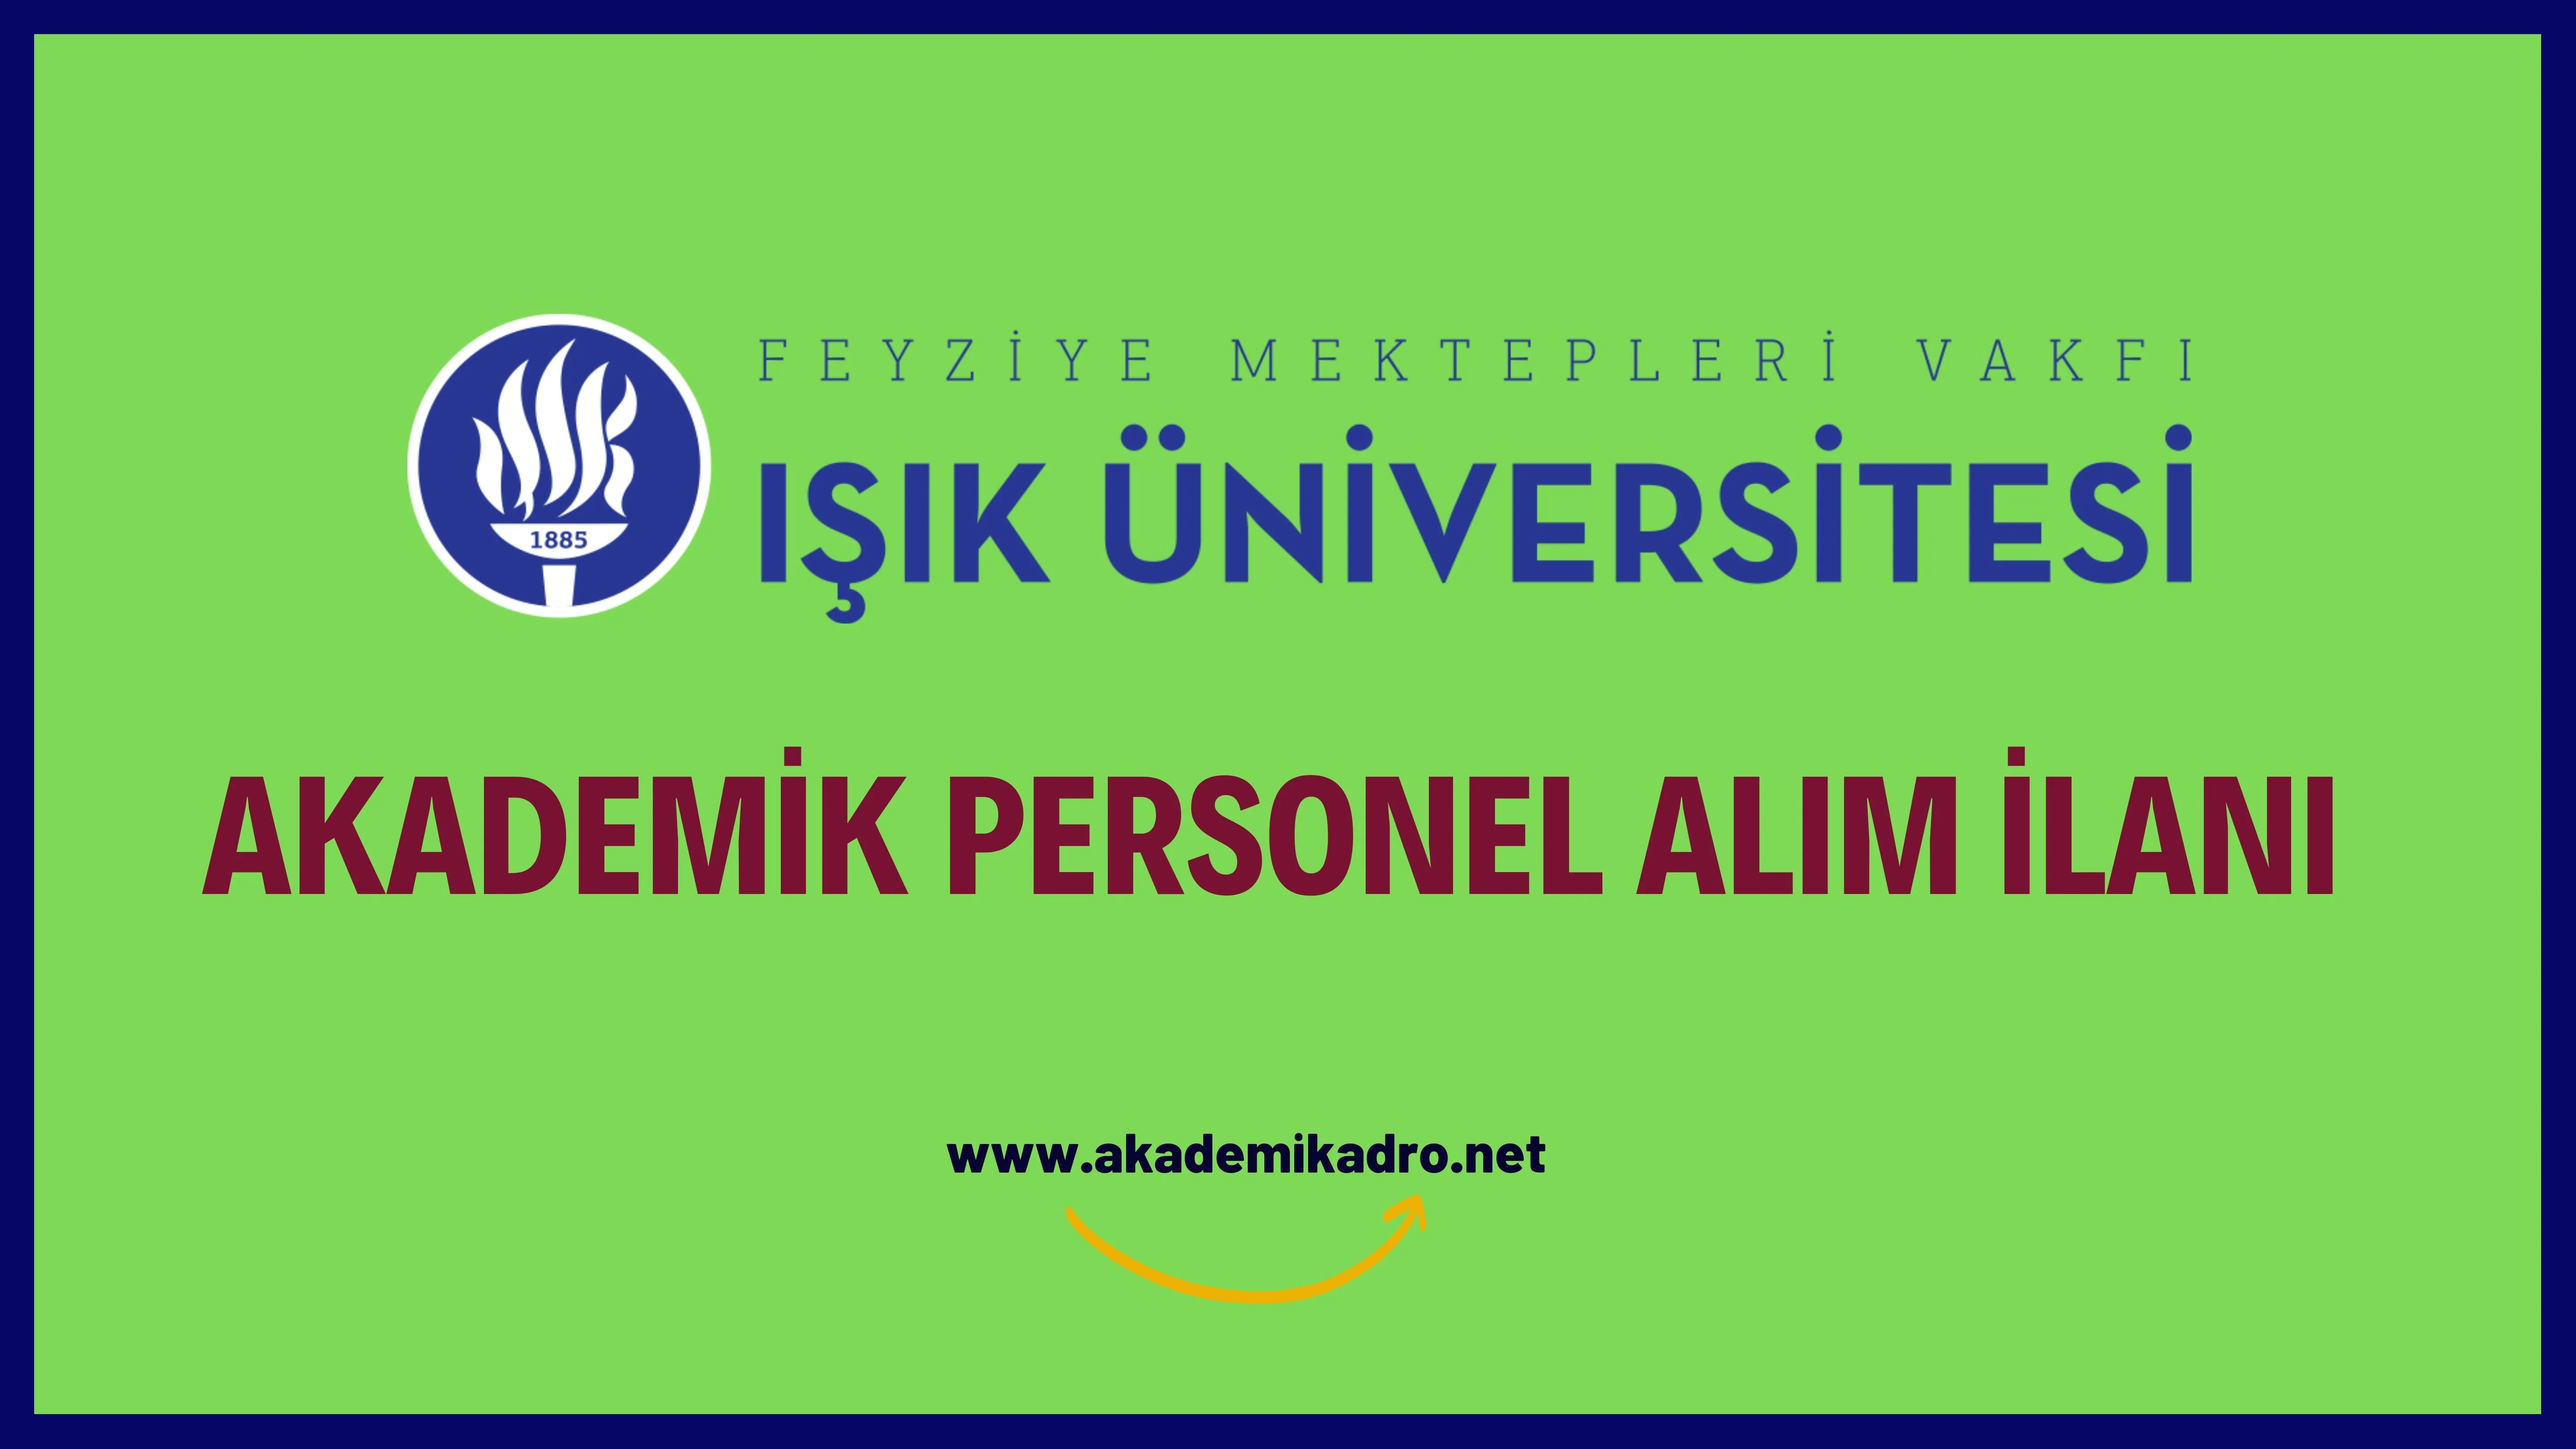 Işık Üniversitesi 2 öğretim üyesi alacaktır.